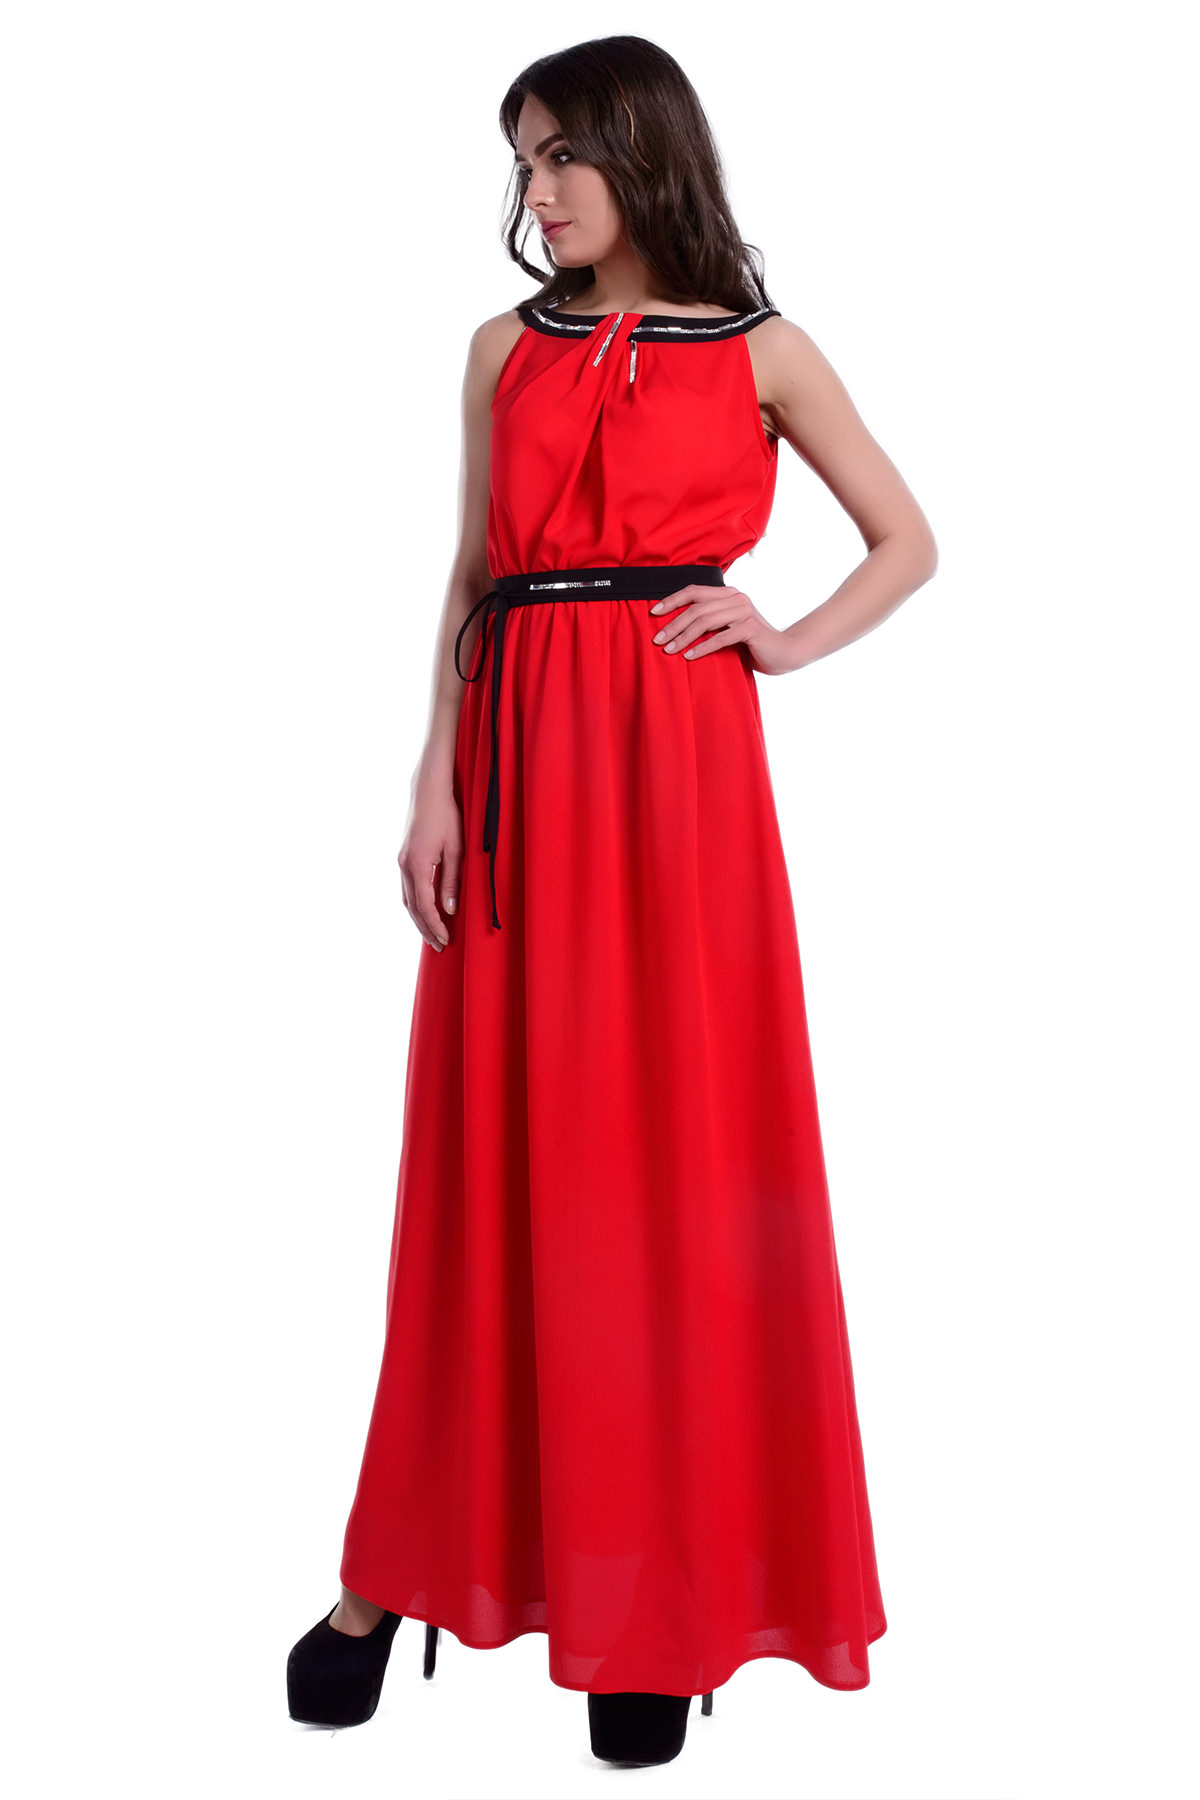 Платье Бали креп шифон АРТ. 6273 Цвет: Красный / черный - фото 2, интернет магазин tm-modus.ru